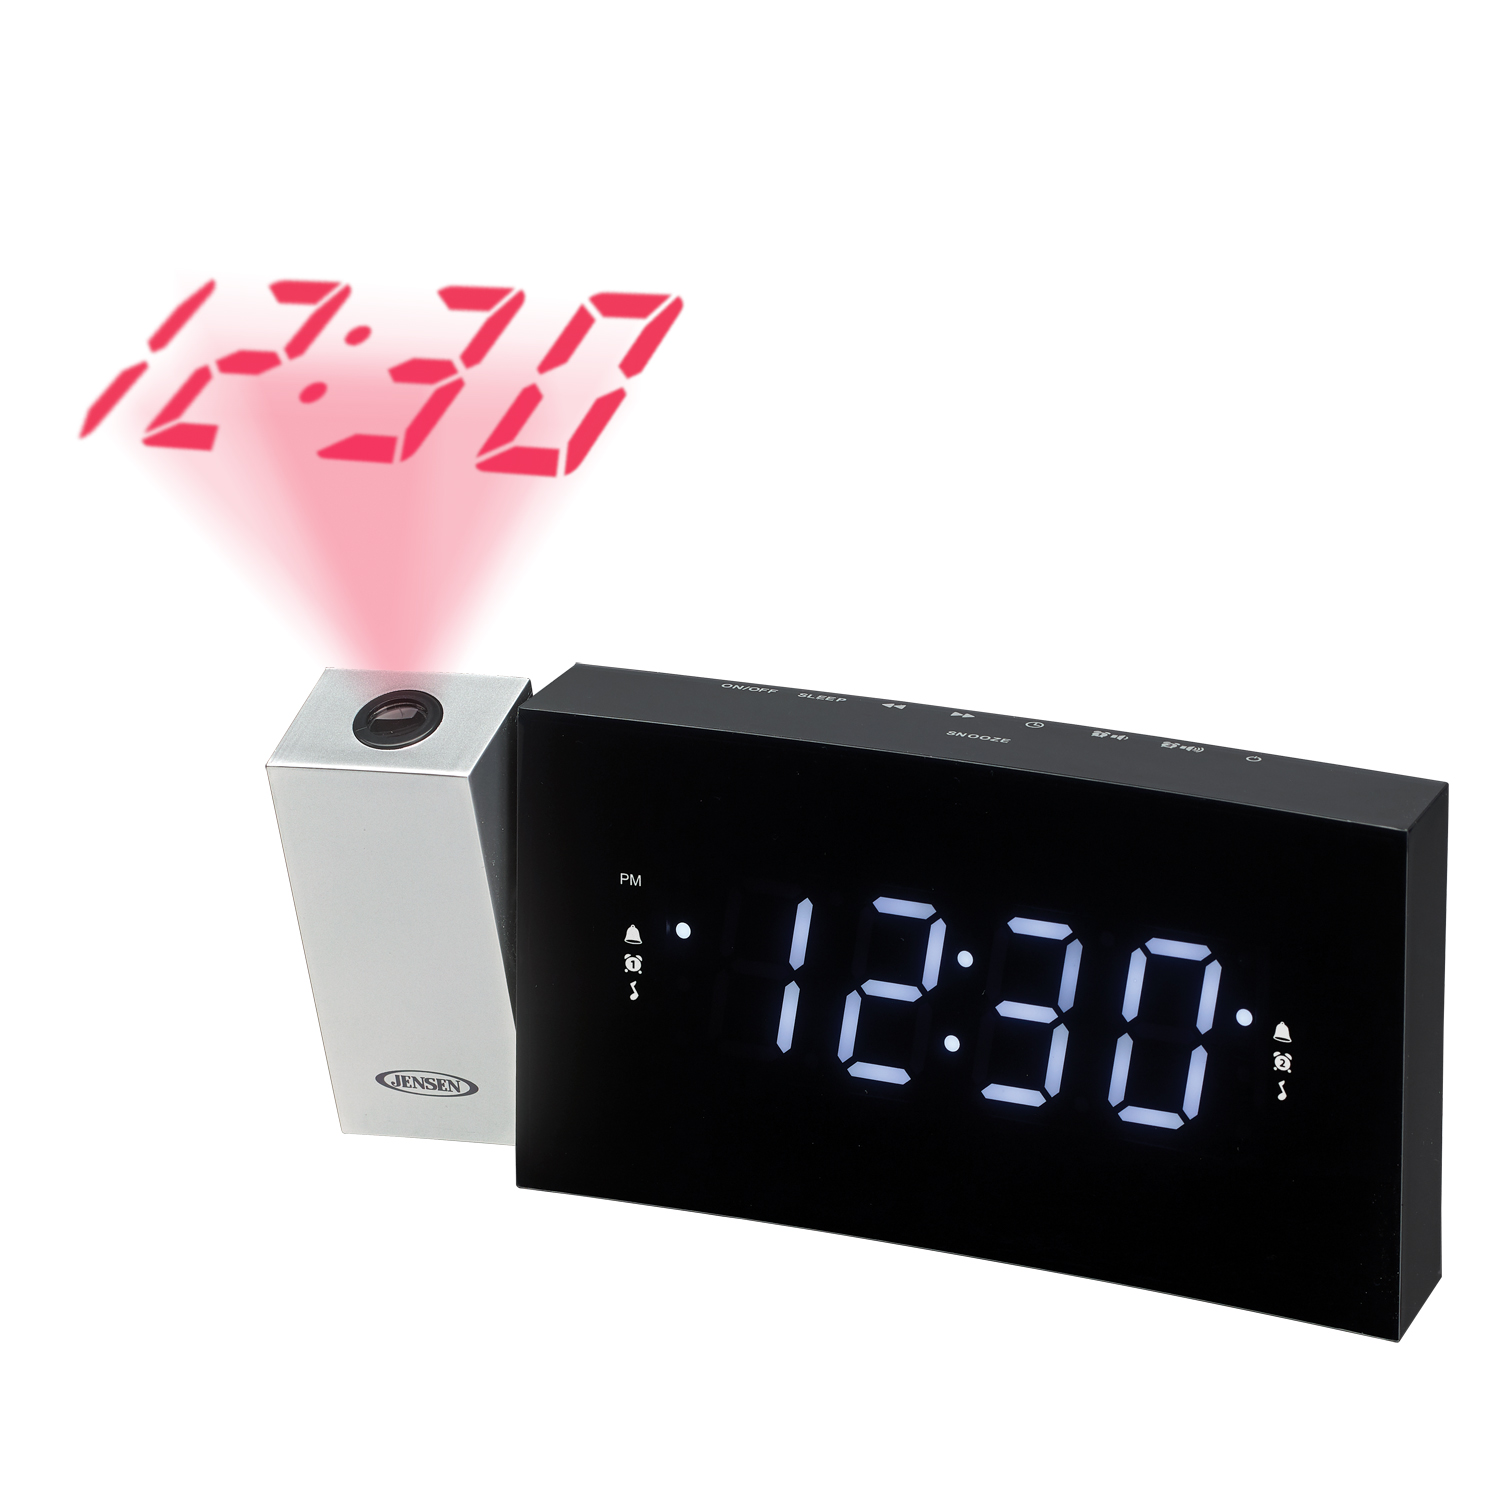 FM Digital 1.2in LED Display w/Alarm